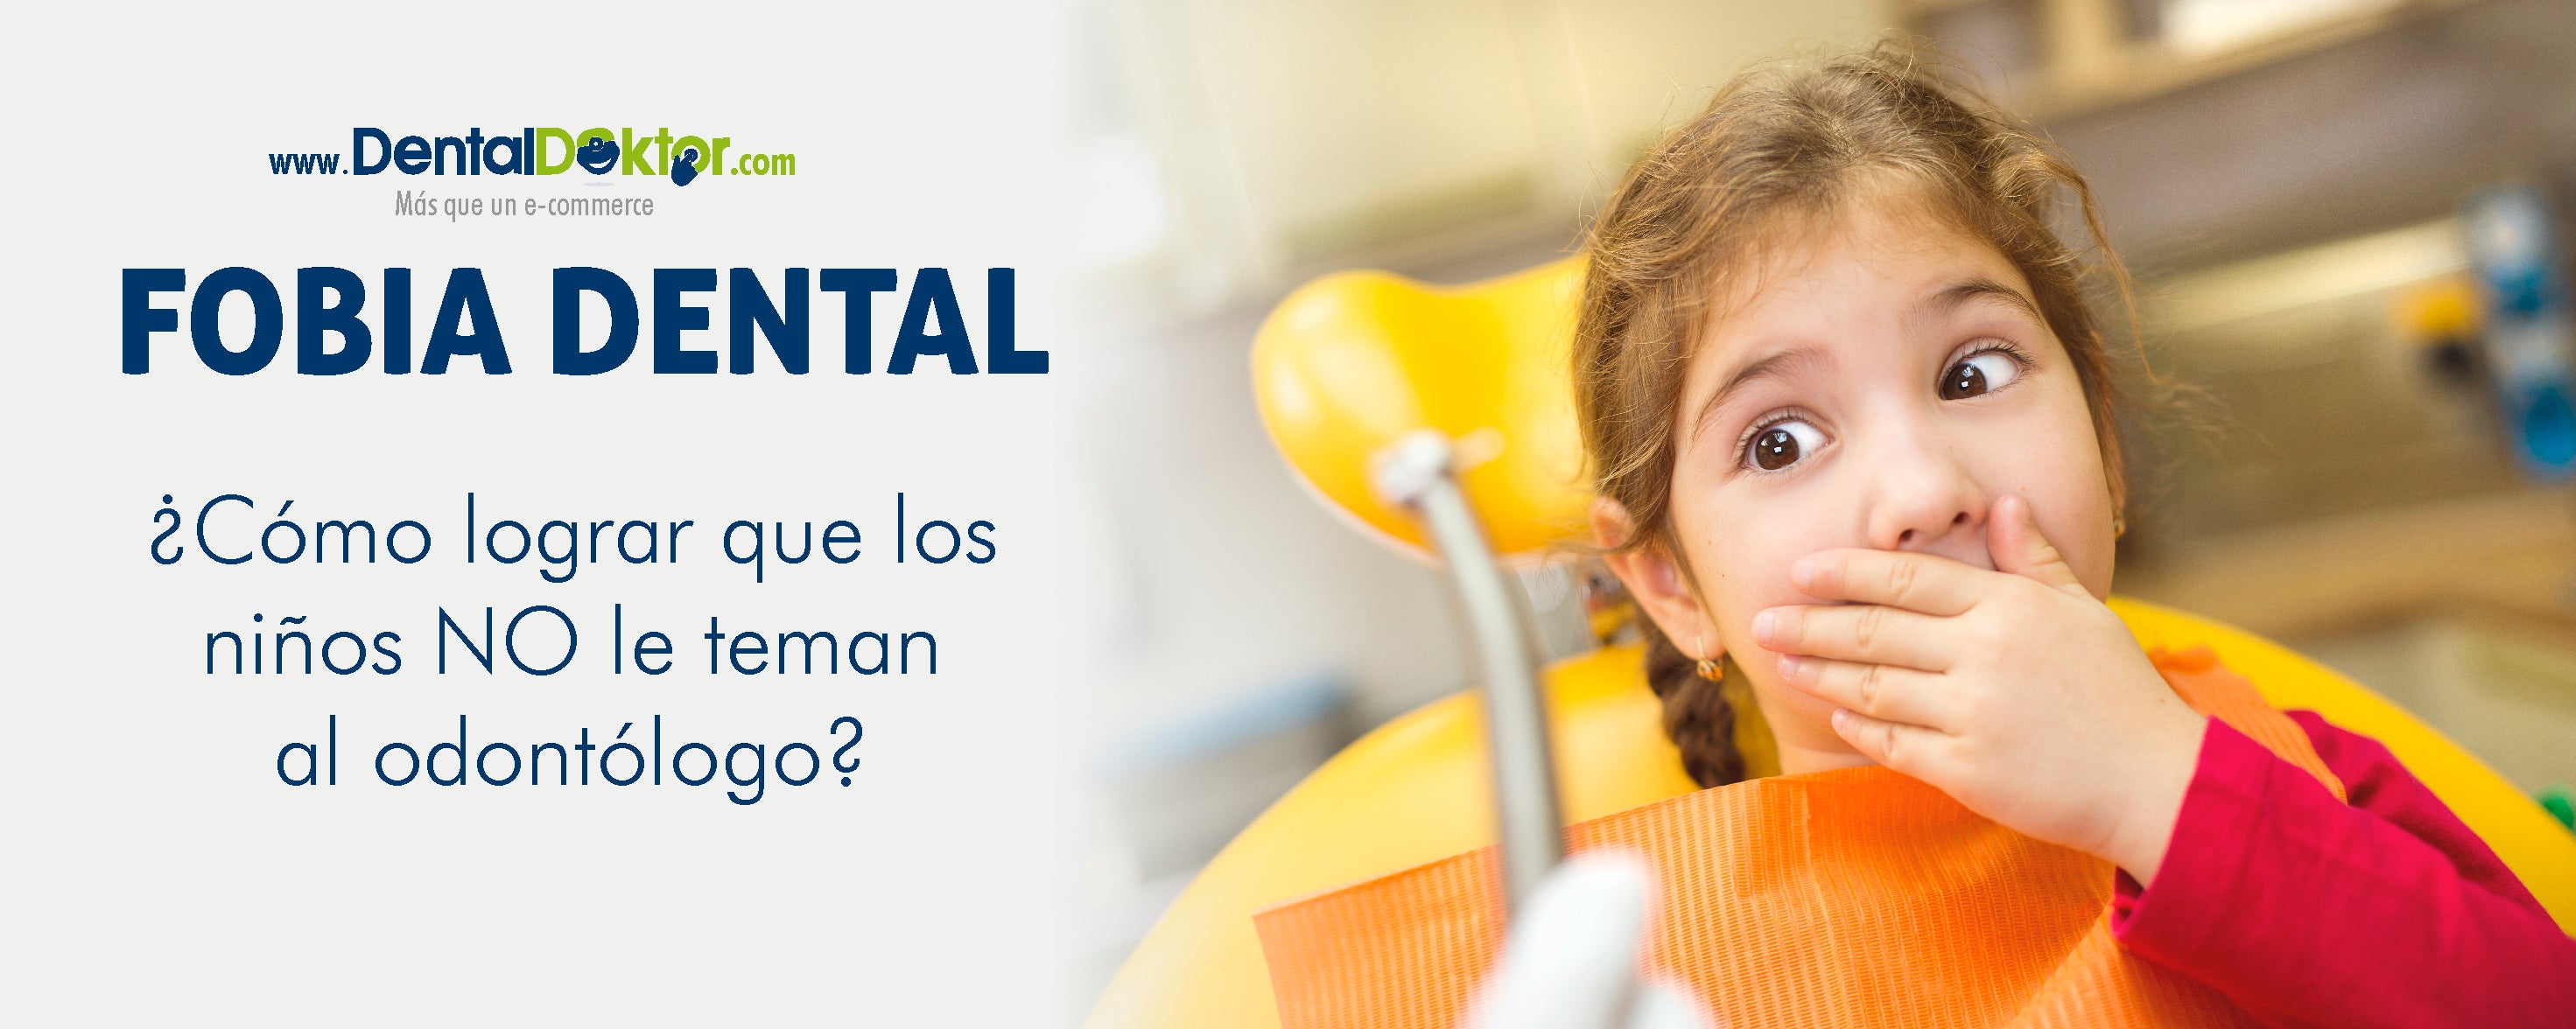 Fobia Dental: ¿Cómo lograr que los niños no le teman al odontólogo?